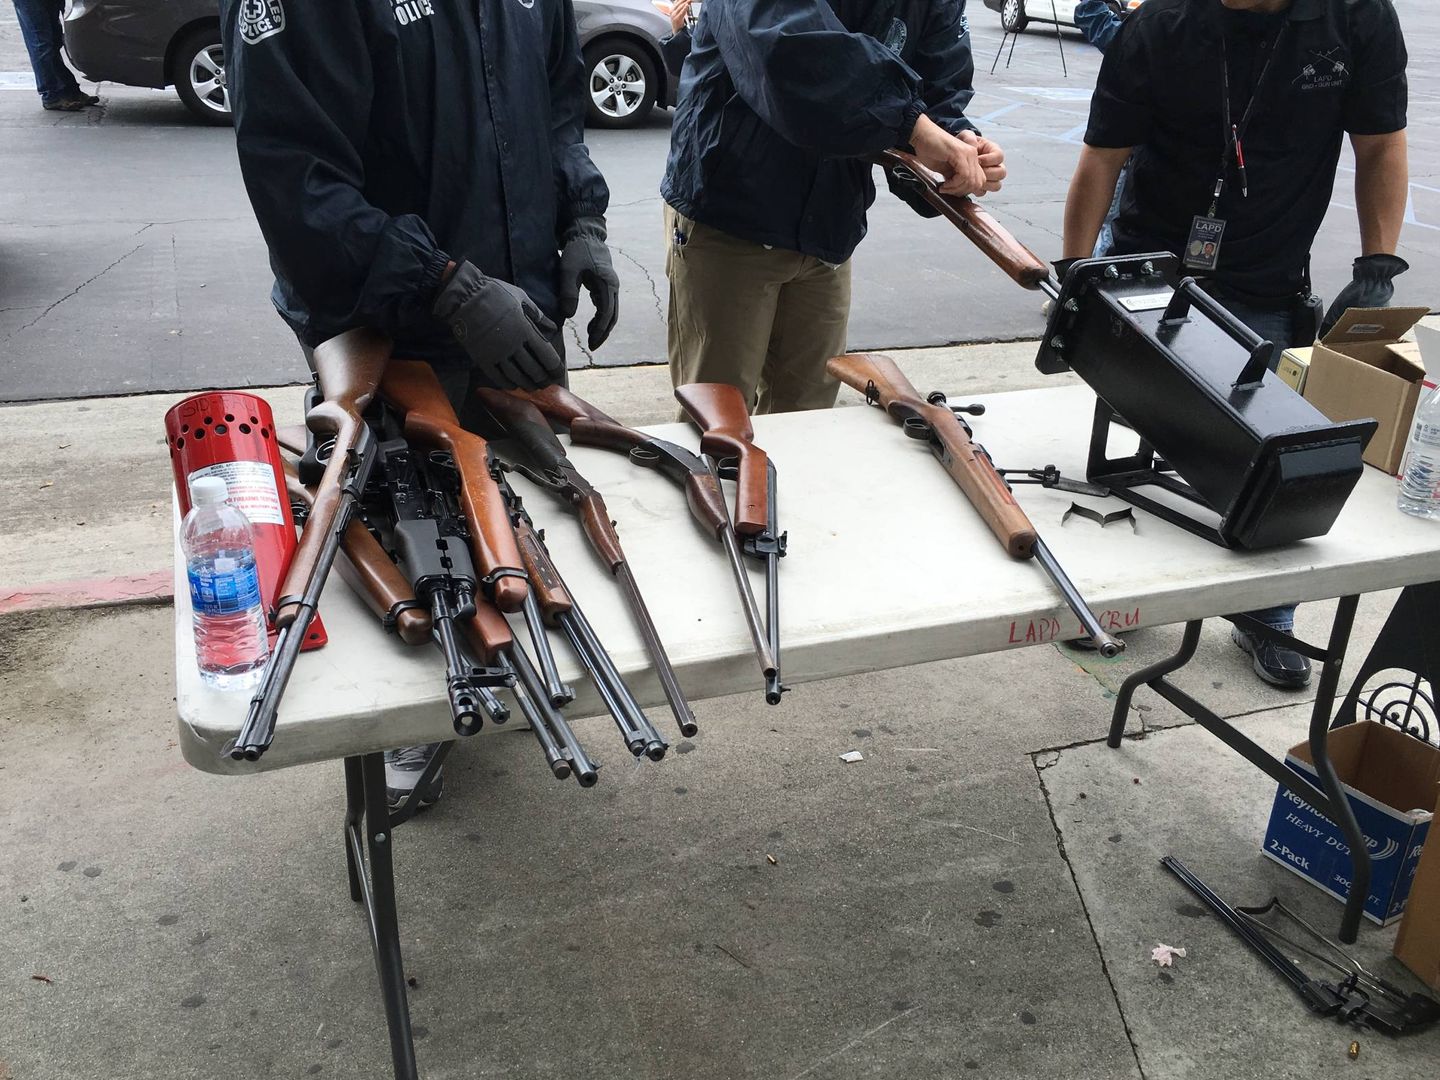 Armas entregadas voluntariamente que los agentes clasifican en una mesa (Foto: Eva Catalán).